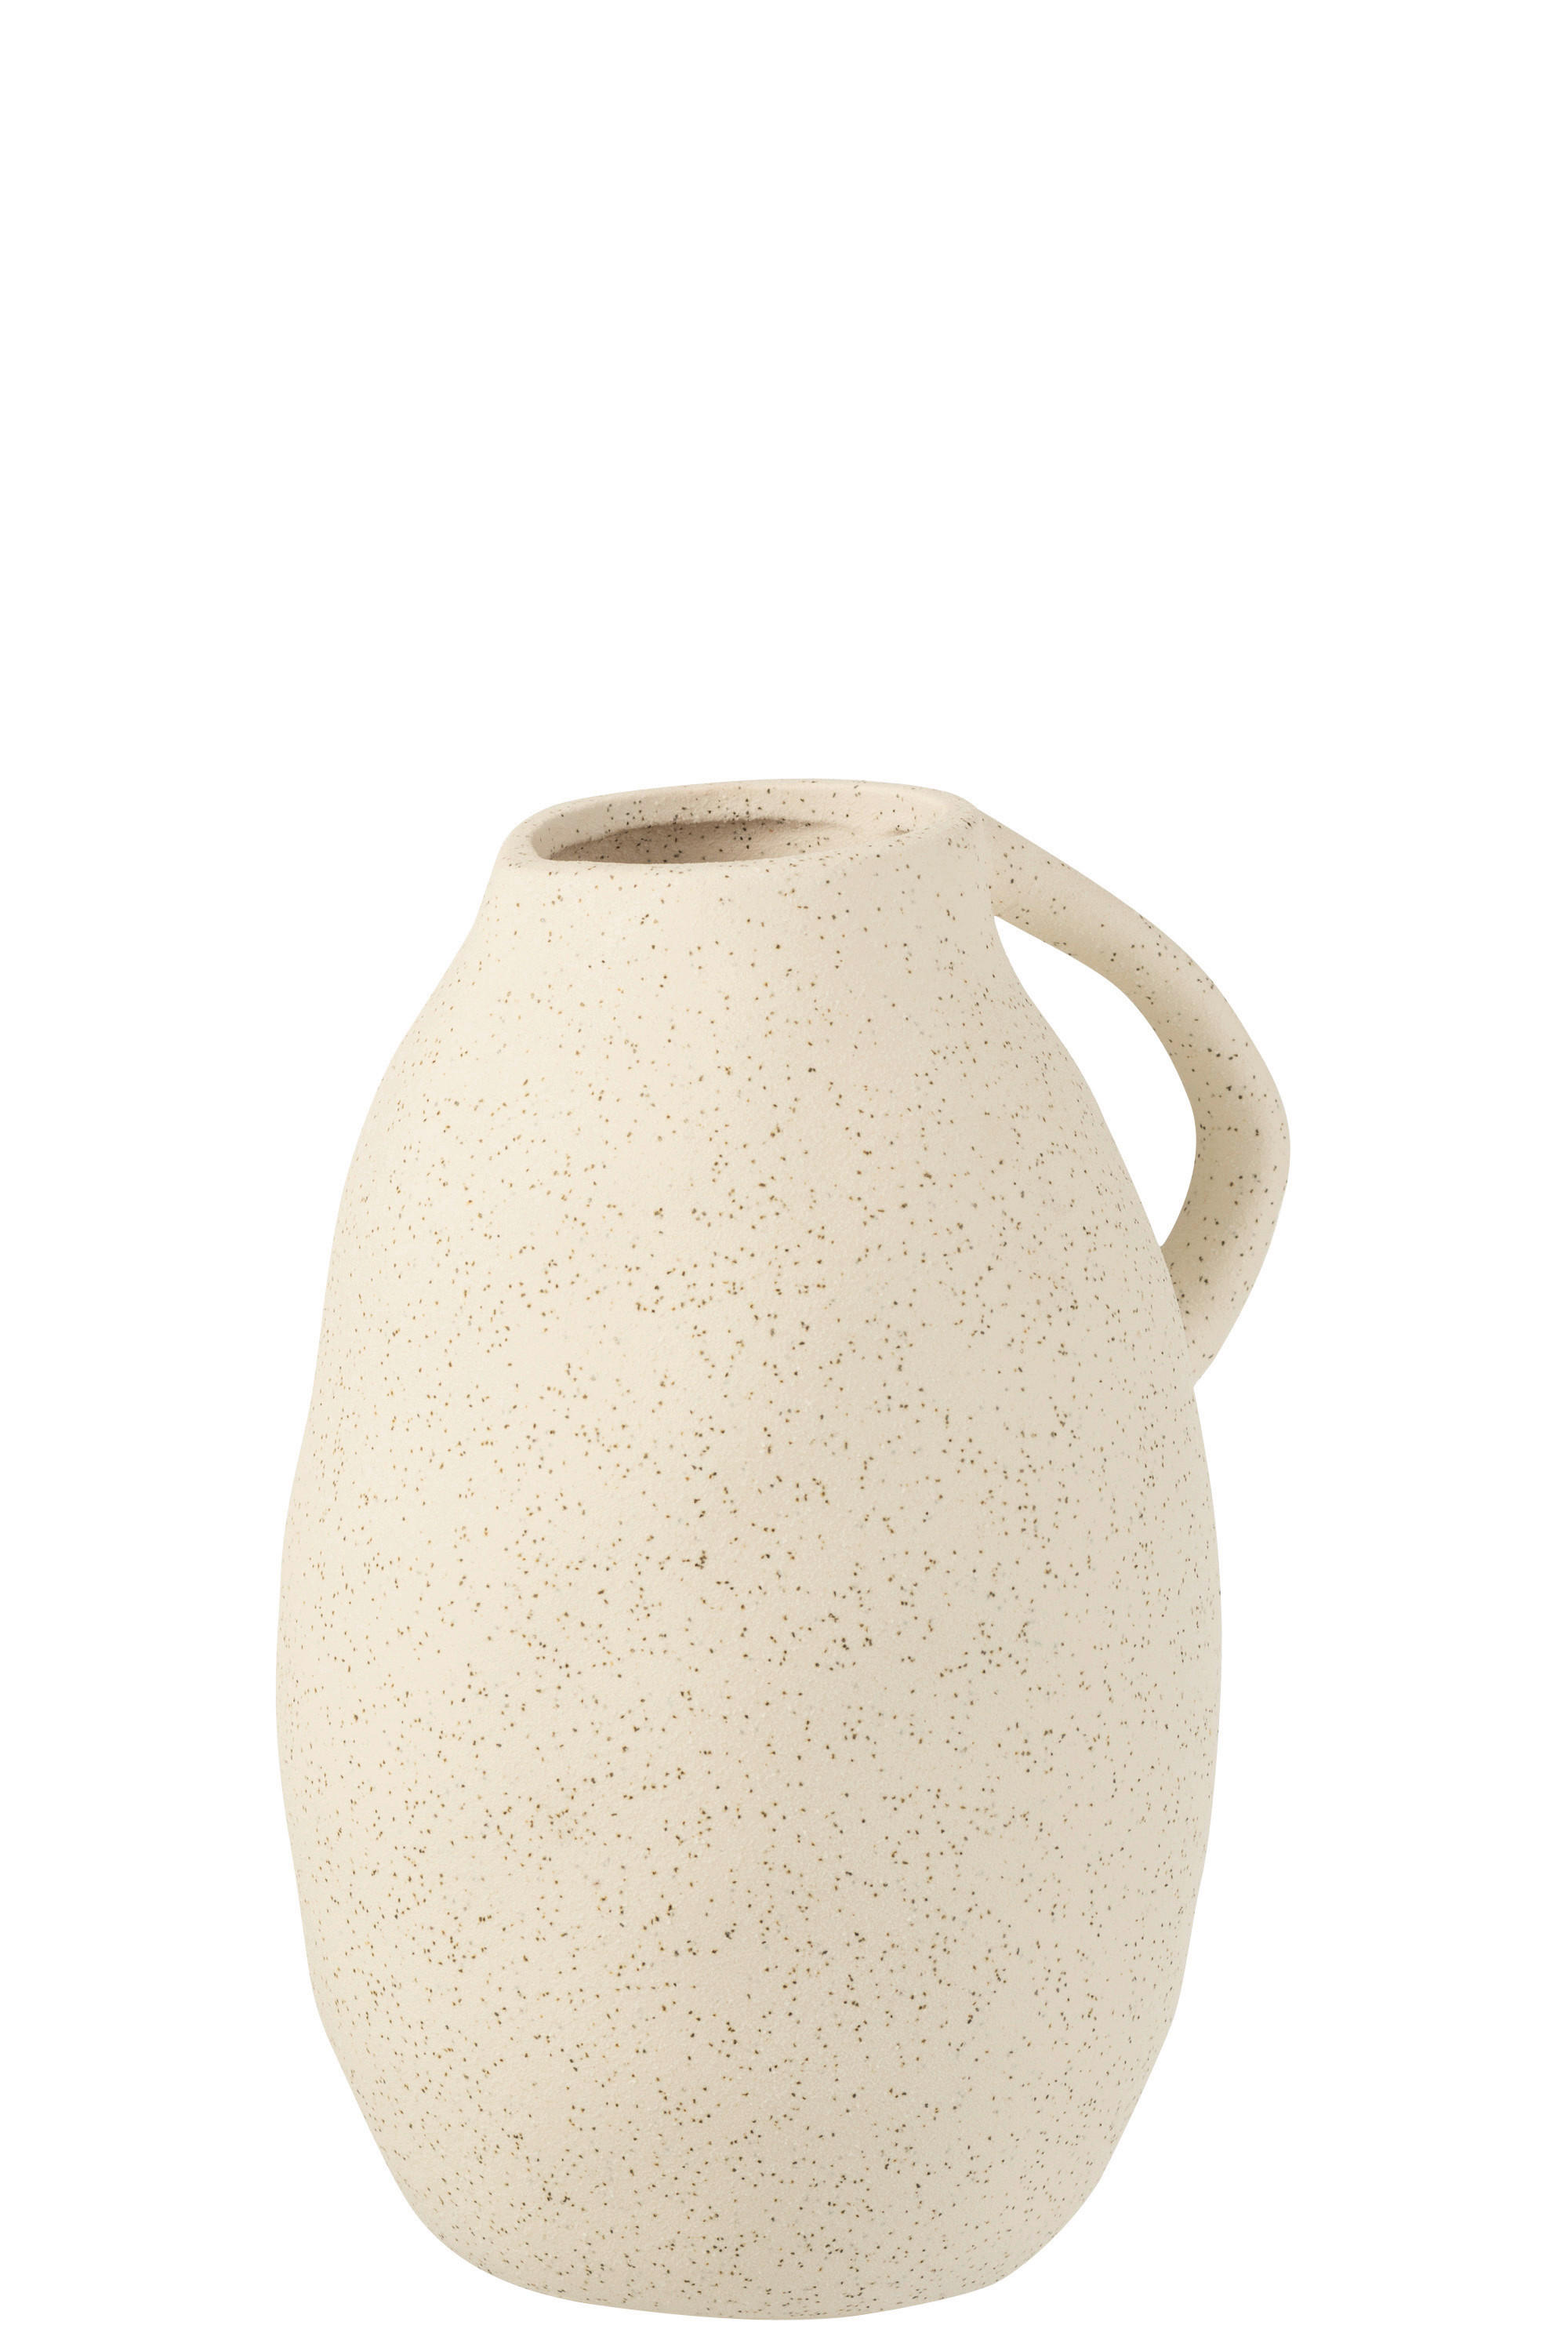 DEKOKRUG   - Beige, MODERN, Keramik (15/25/17cm)